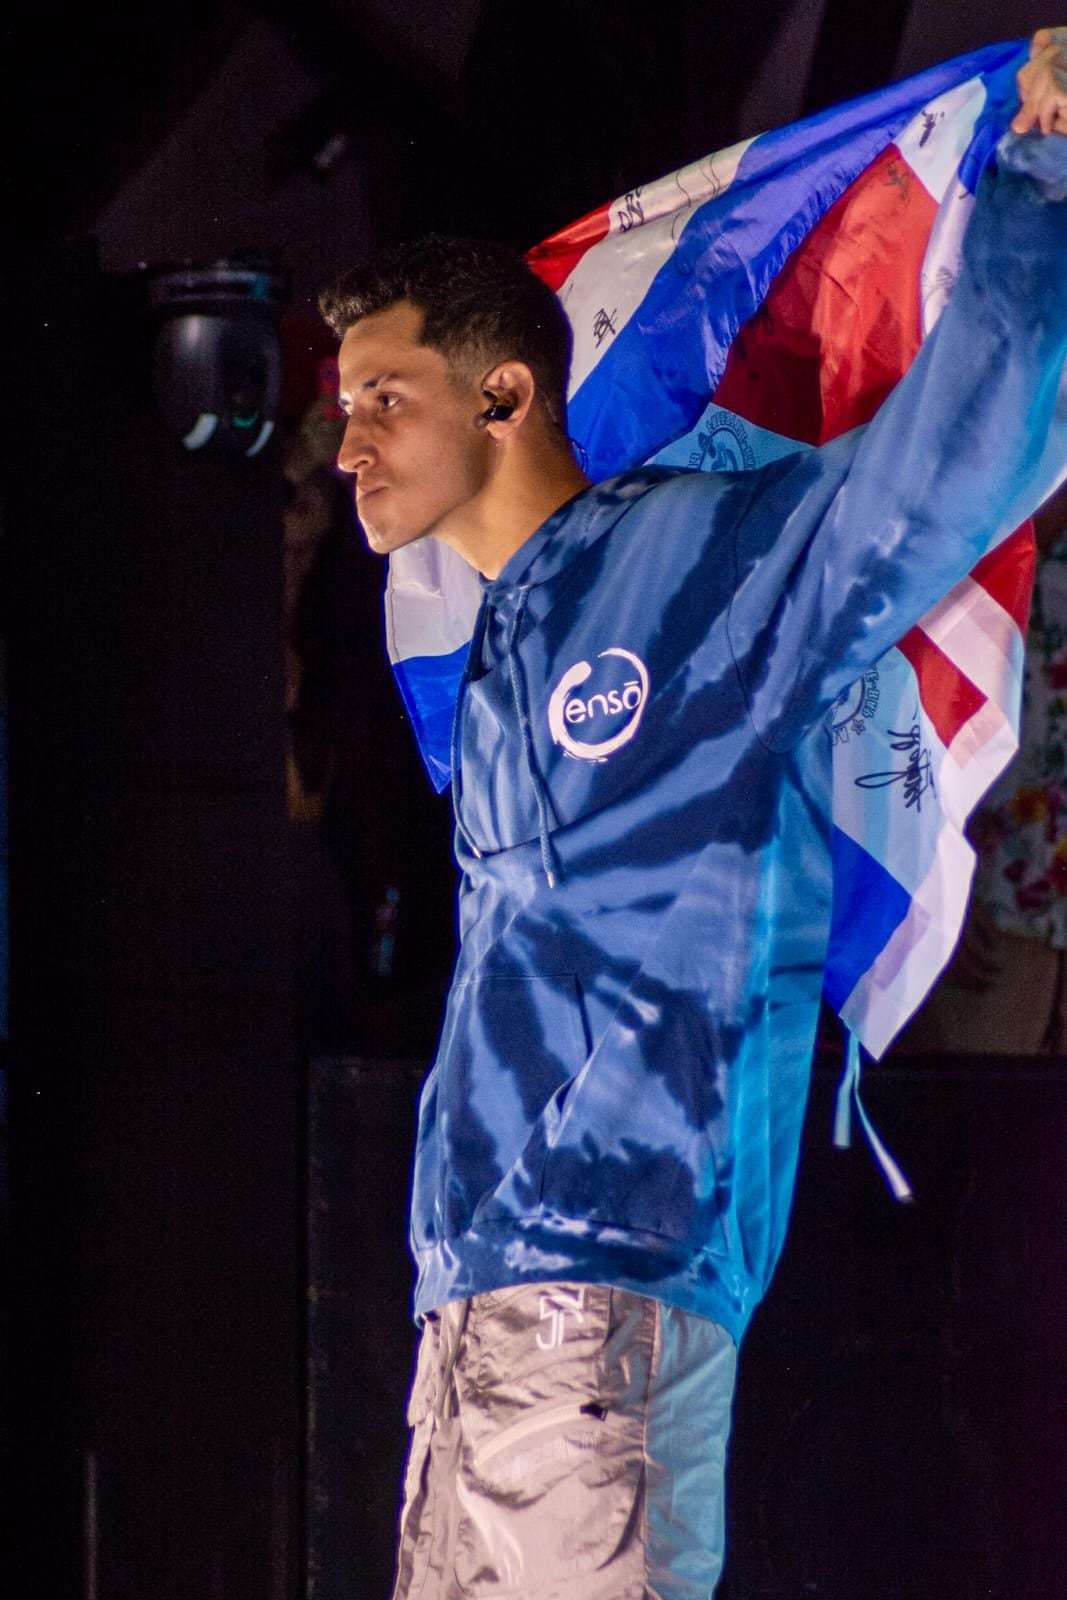 El rapero costarricense SNK (Sergio Guillén, de Cartago) es el representante del país en la competencia internacional.